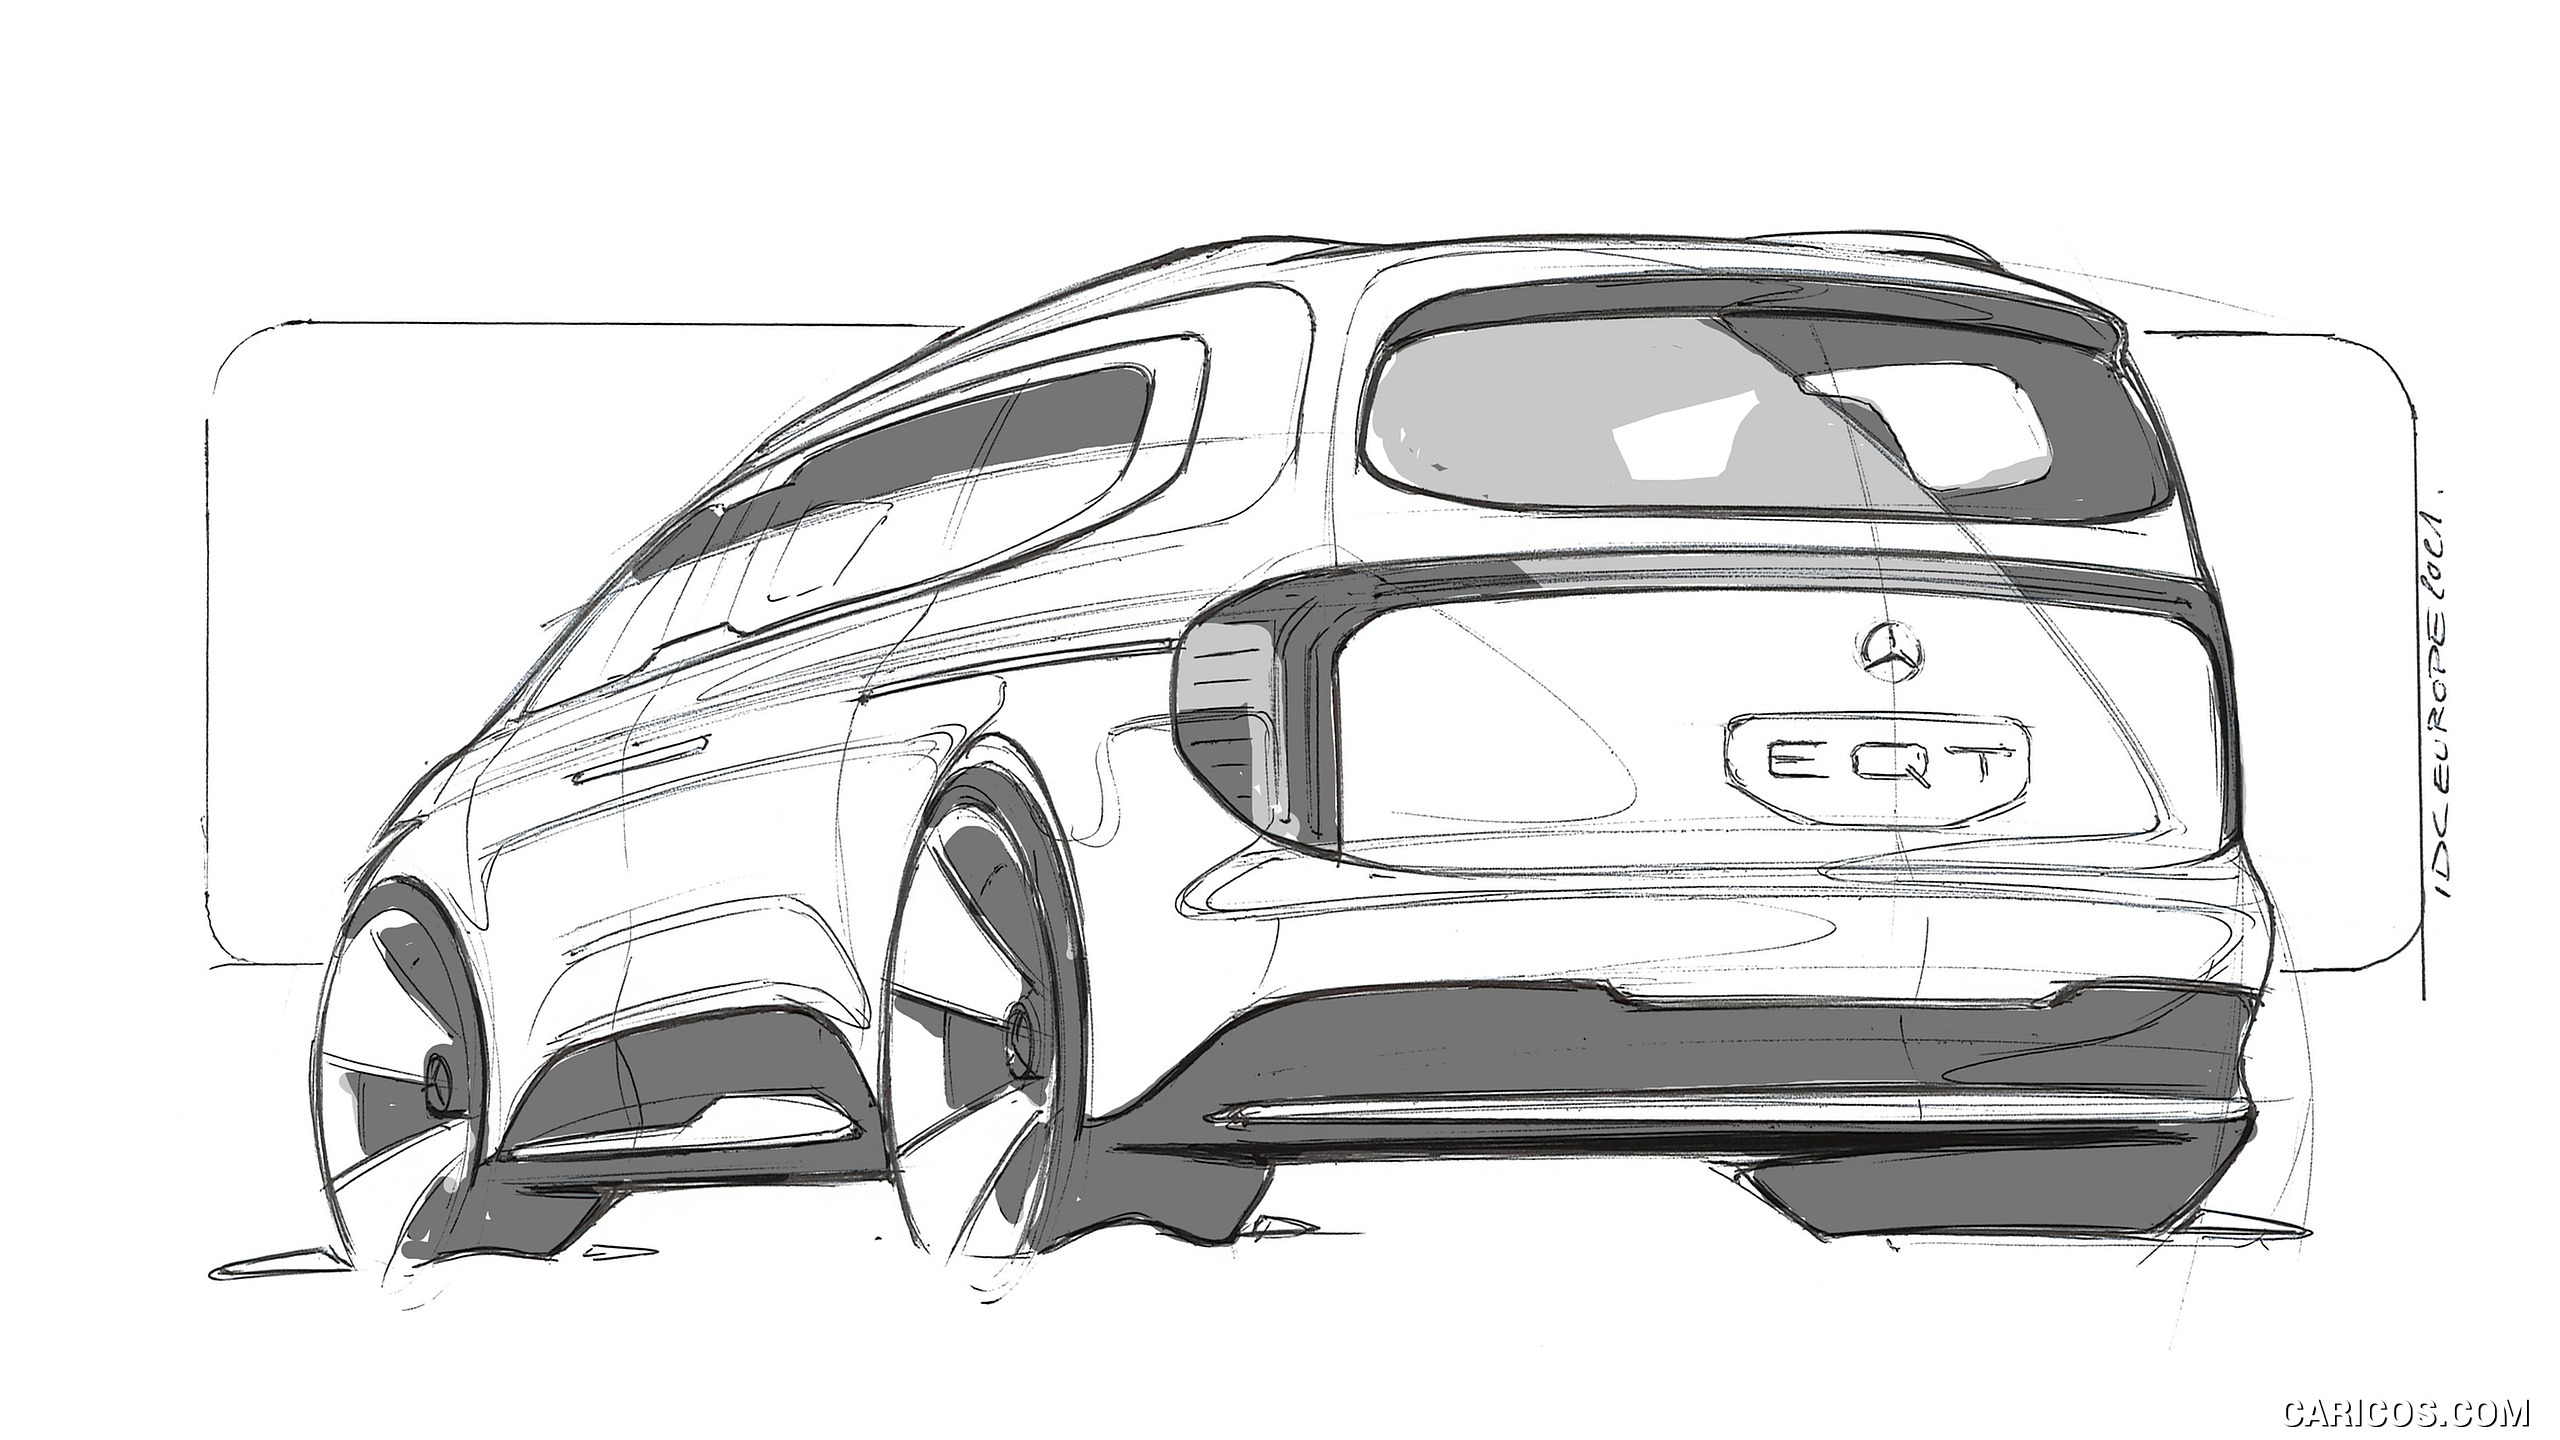 2021 Mercedes-Benz EQT Concept - Design Sketch, #48 of 51